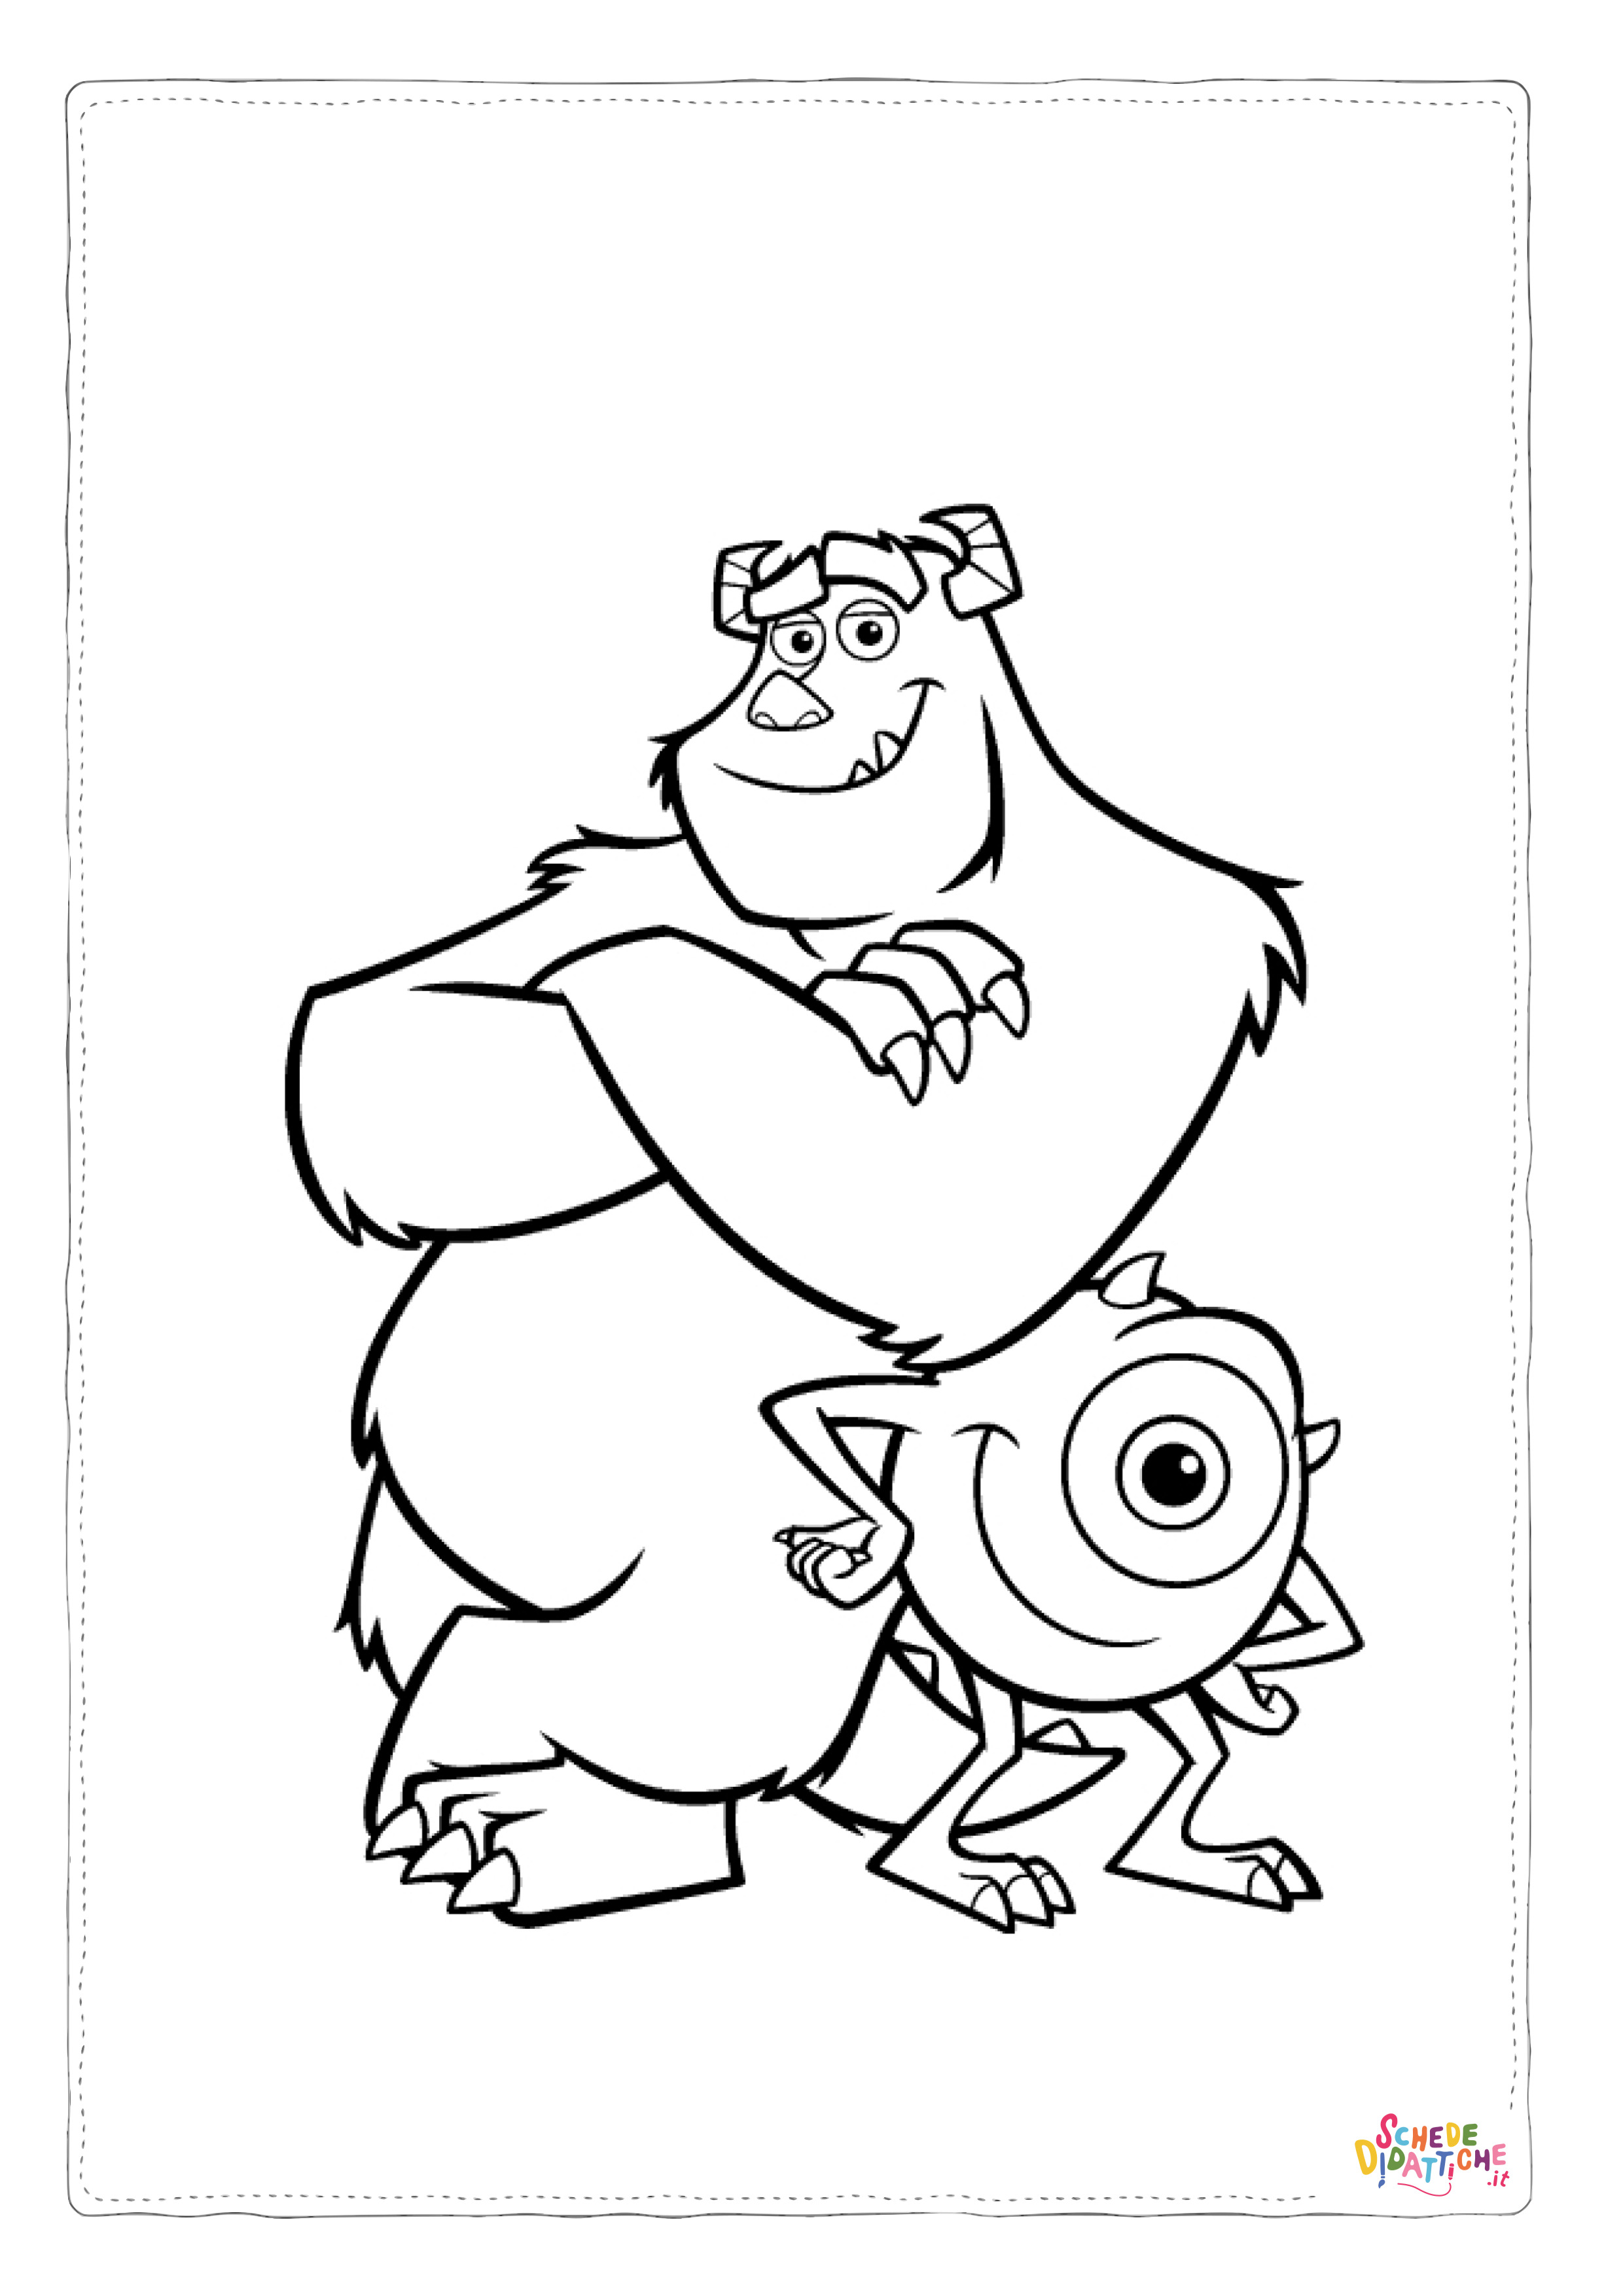 Disegno di Monsters & Co da stampare e colorare 13